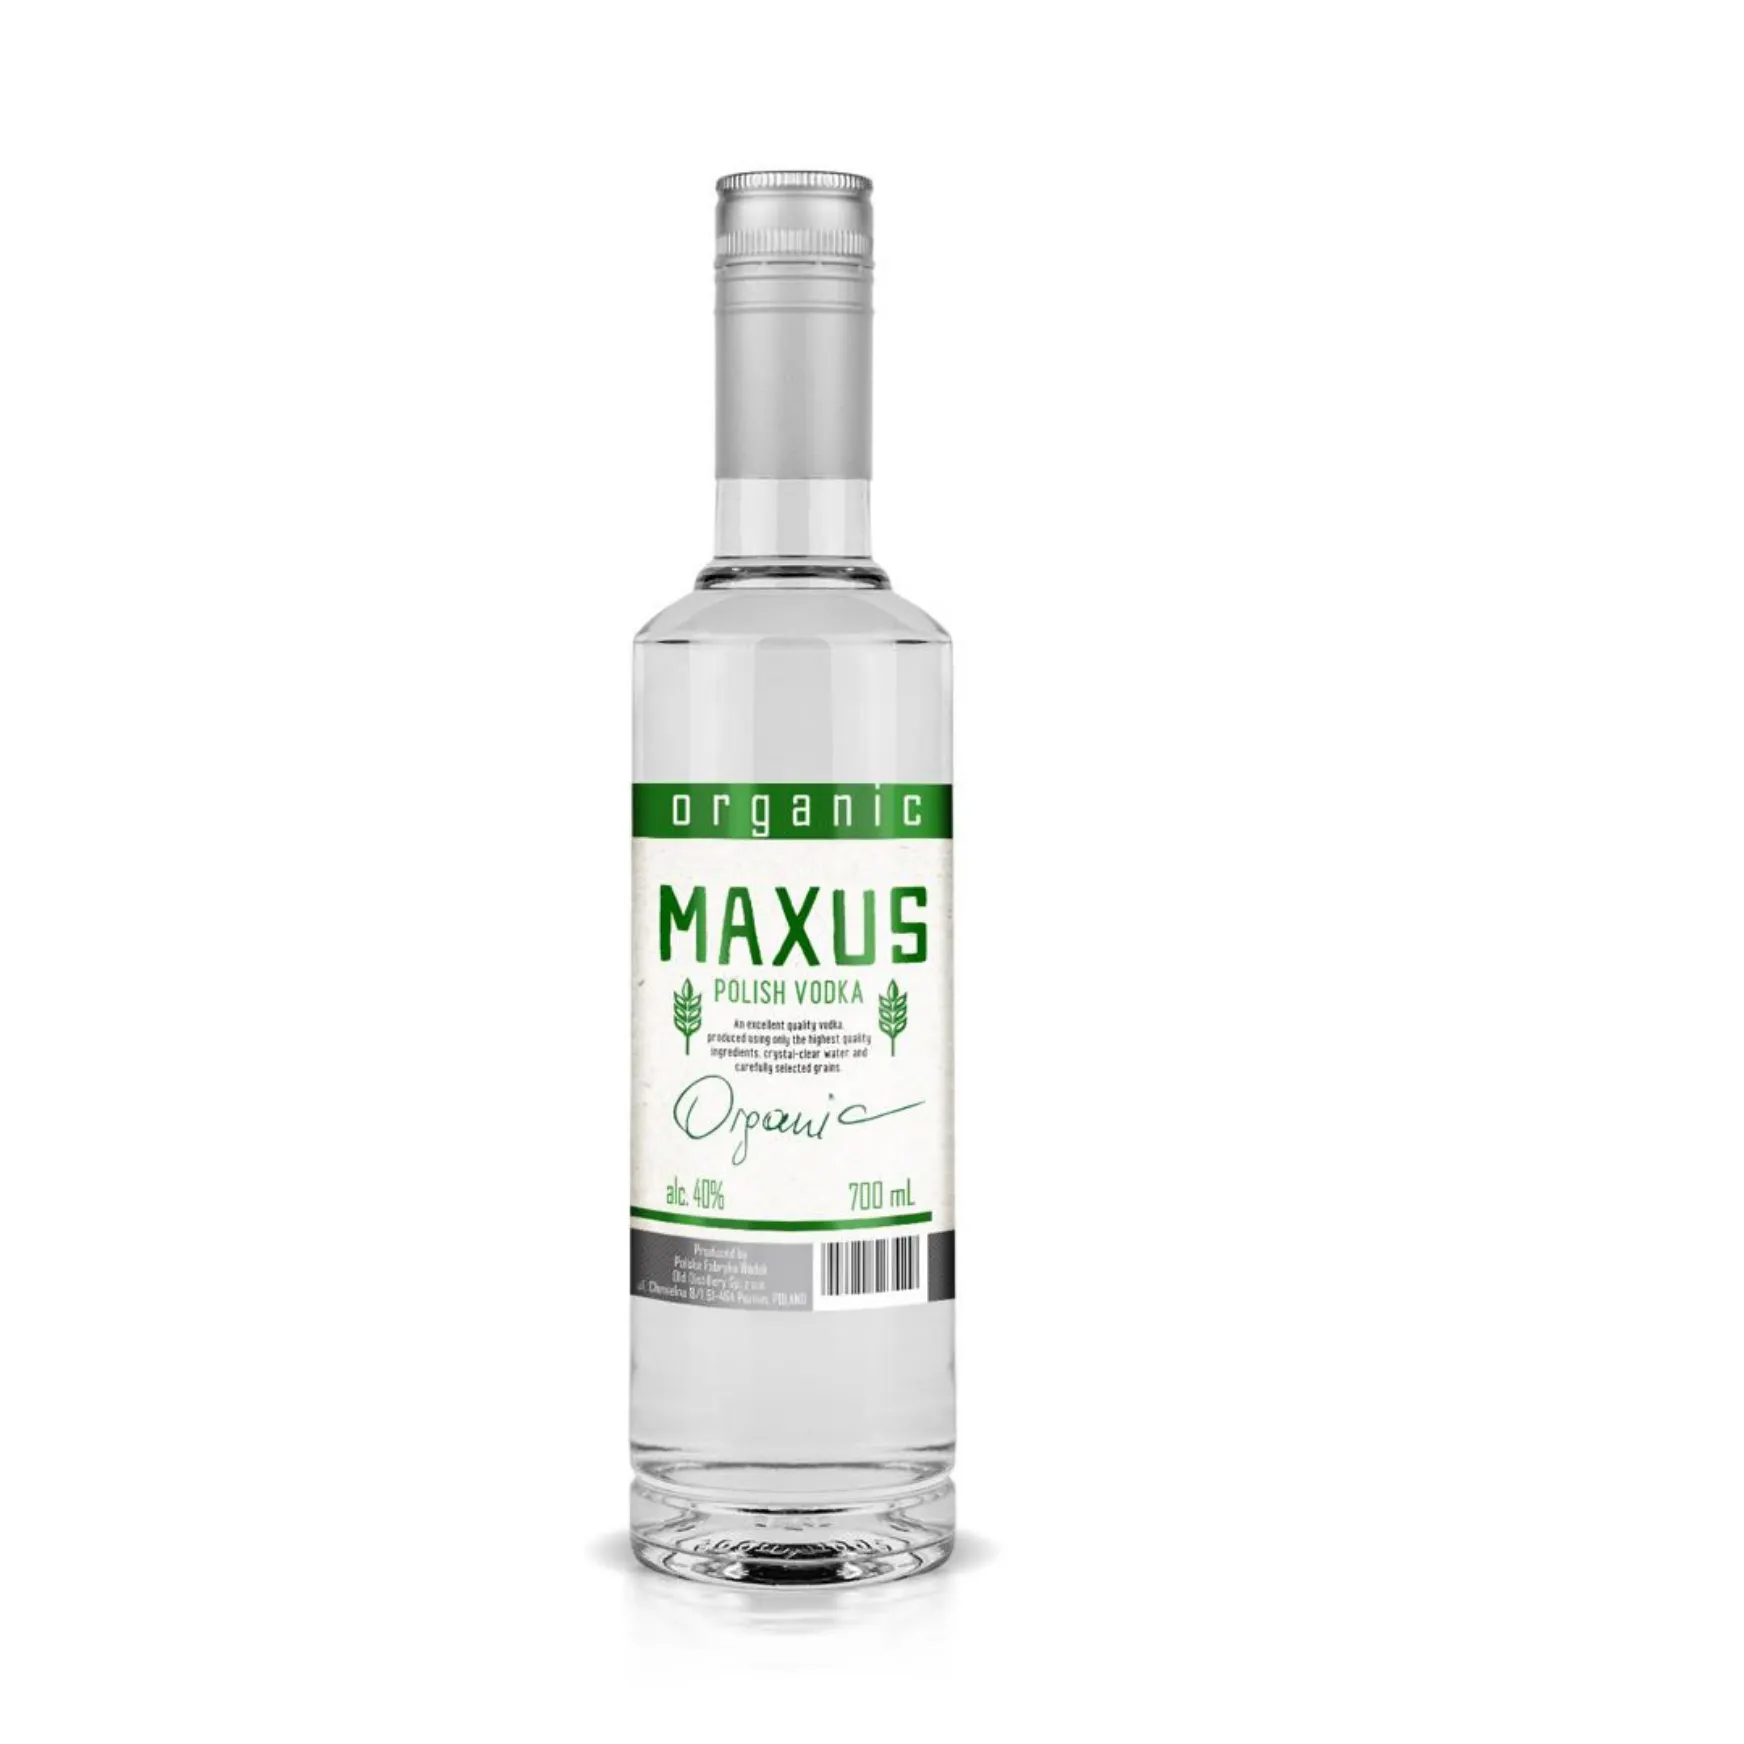 Organic Maxus vodka 700ml high quality polish vodka bottle custom glass bottles packaged alcohol spirit supplier